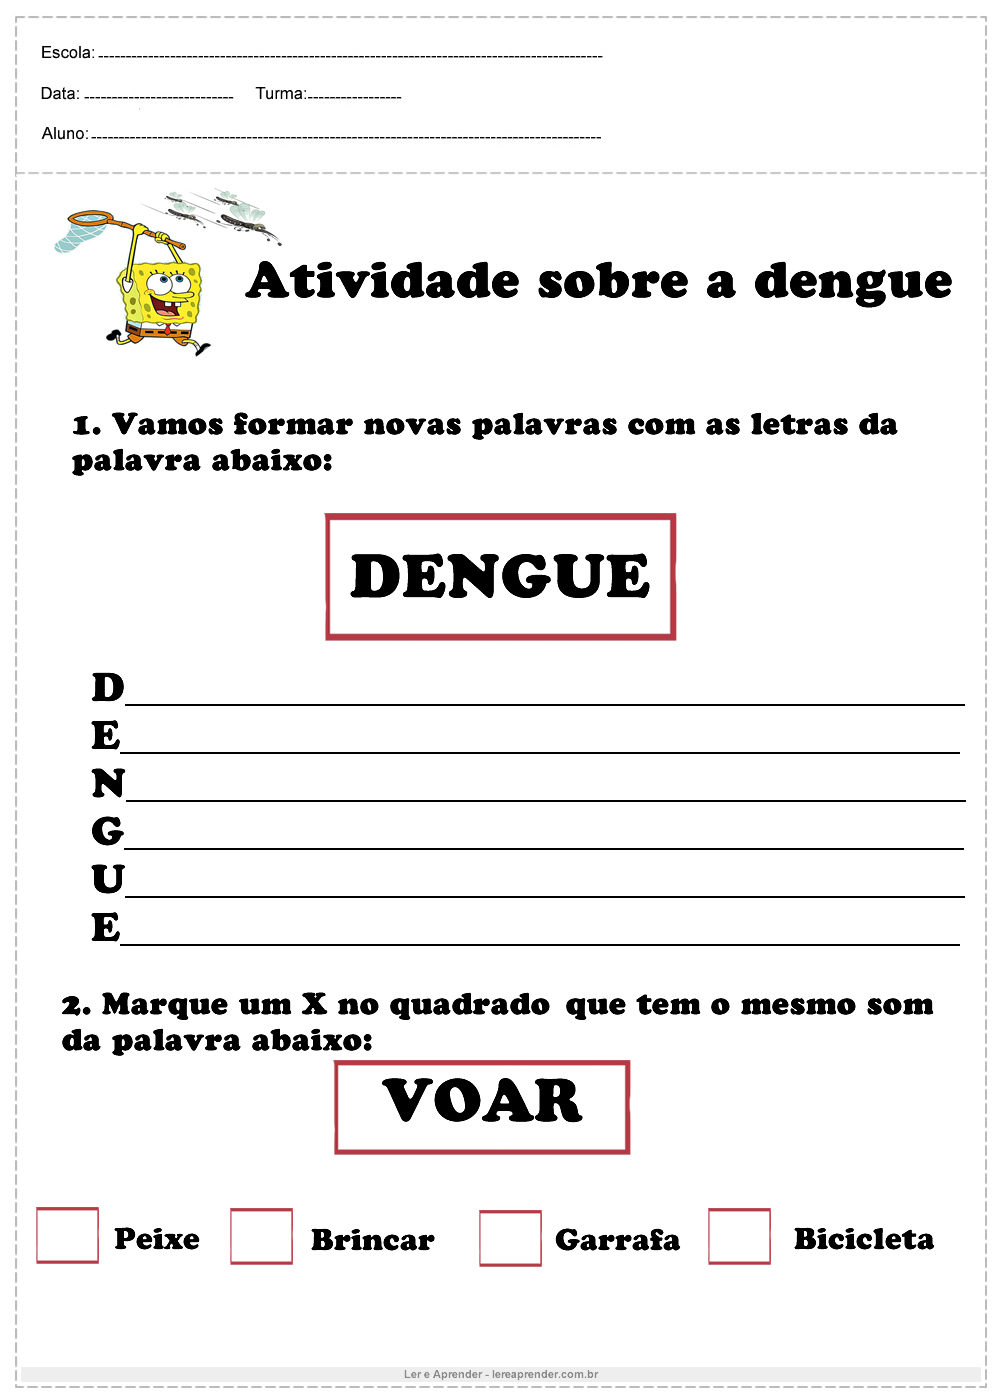 Atividade sobre a dengue vamos formar palavras